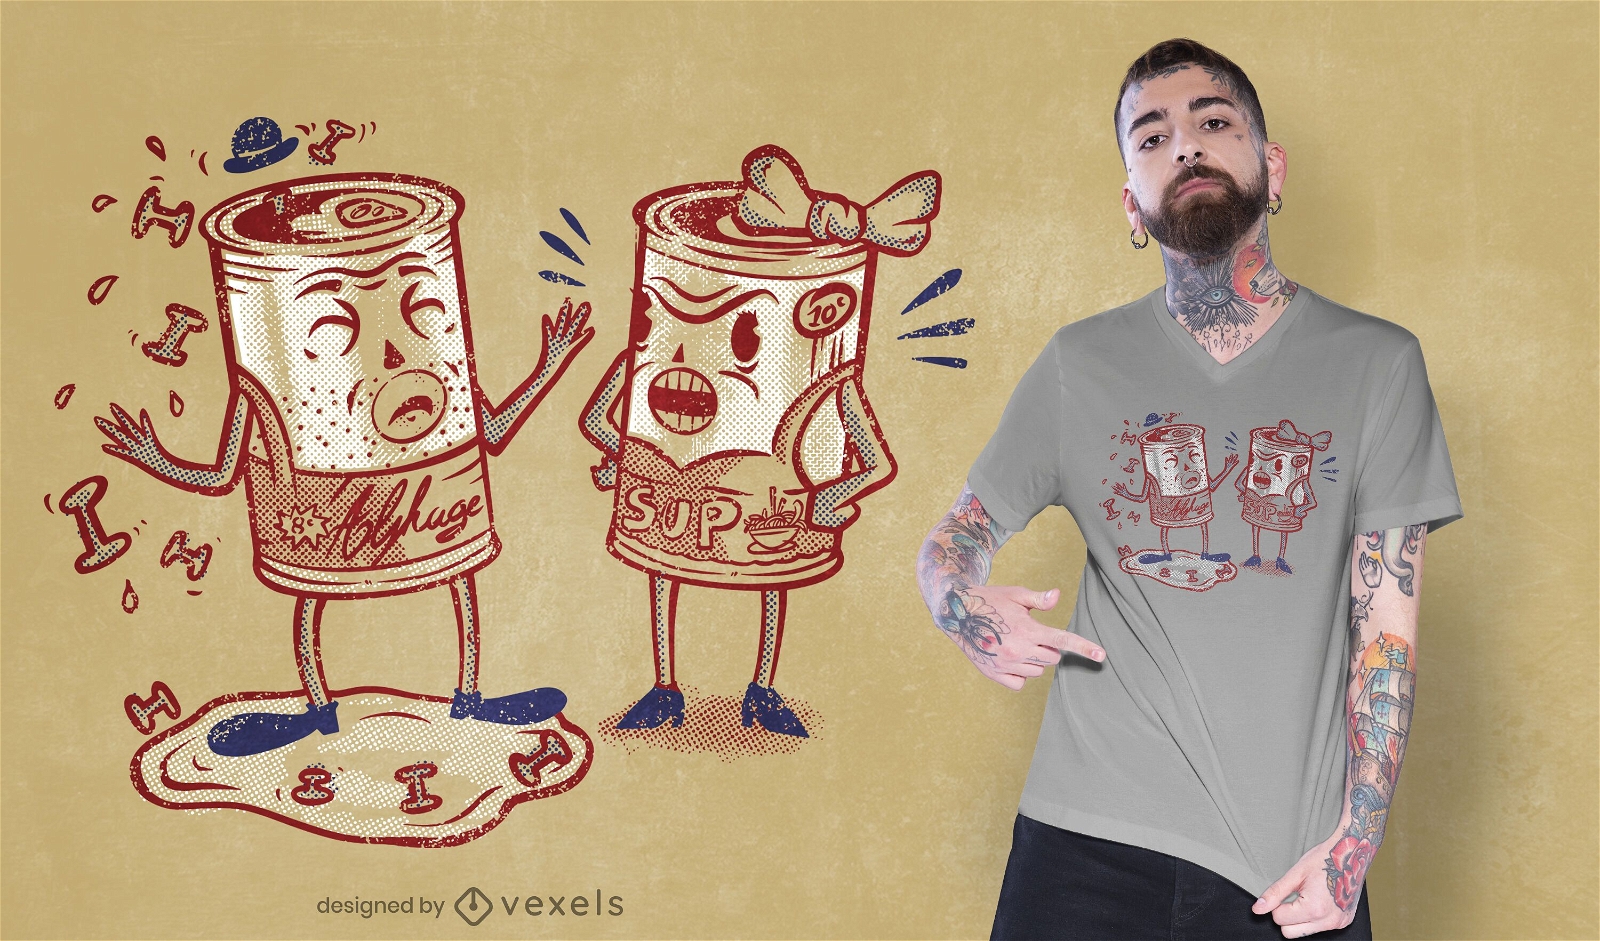 Design engra?ado de camisetas com latas de alphaguetti